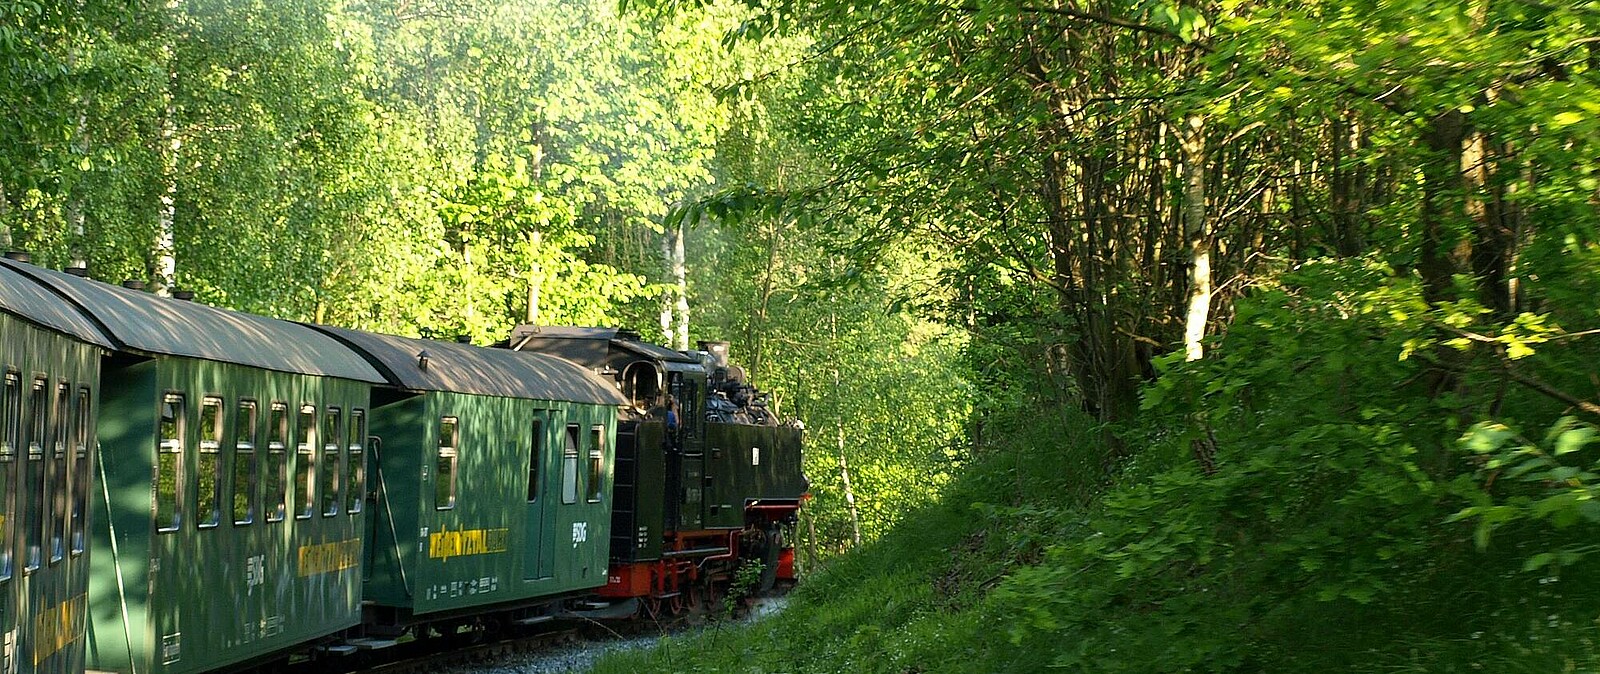 gemütlich geht es mit der Bimmel, wie die Schmalspurbahn auch genannt wird, von Freital nach Dippoldiswalde